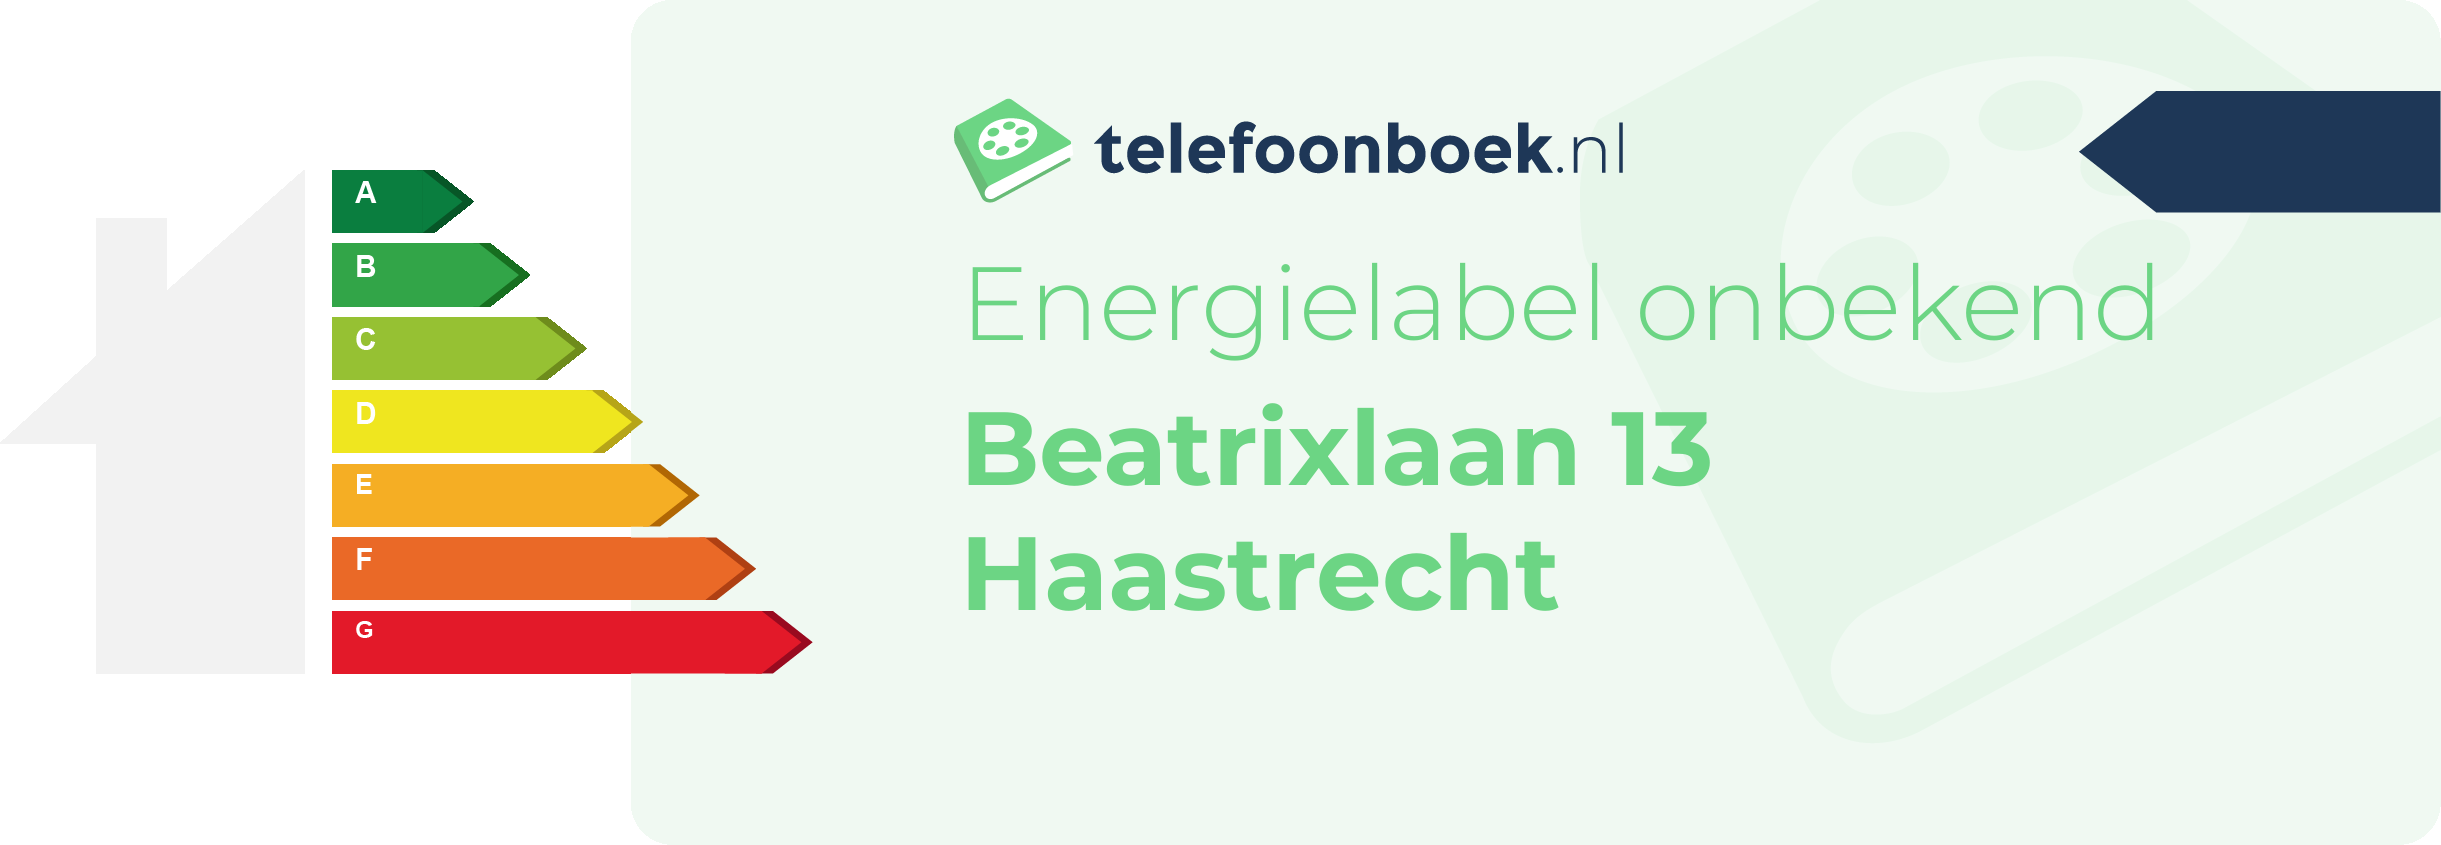 Energielabel Beatrixlaan 13 Haastrecht